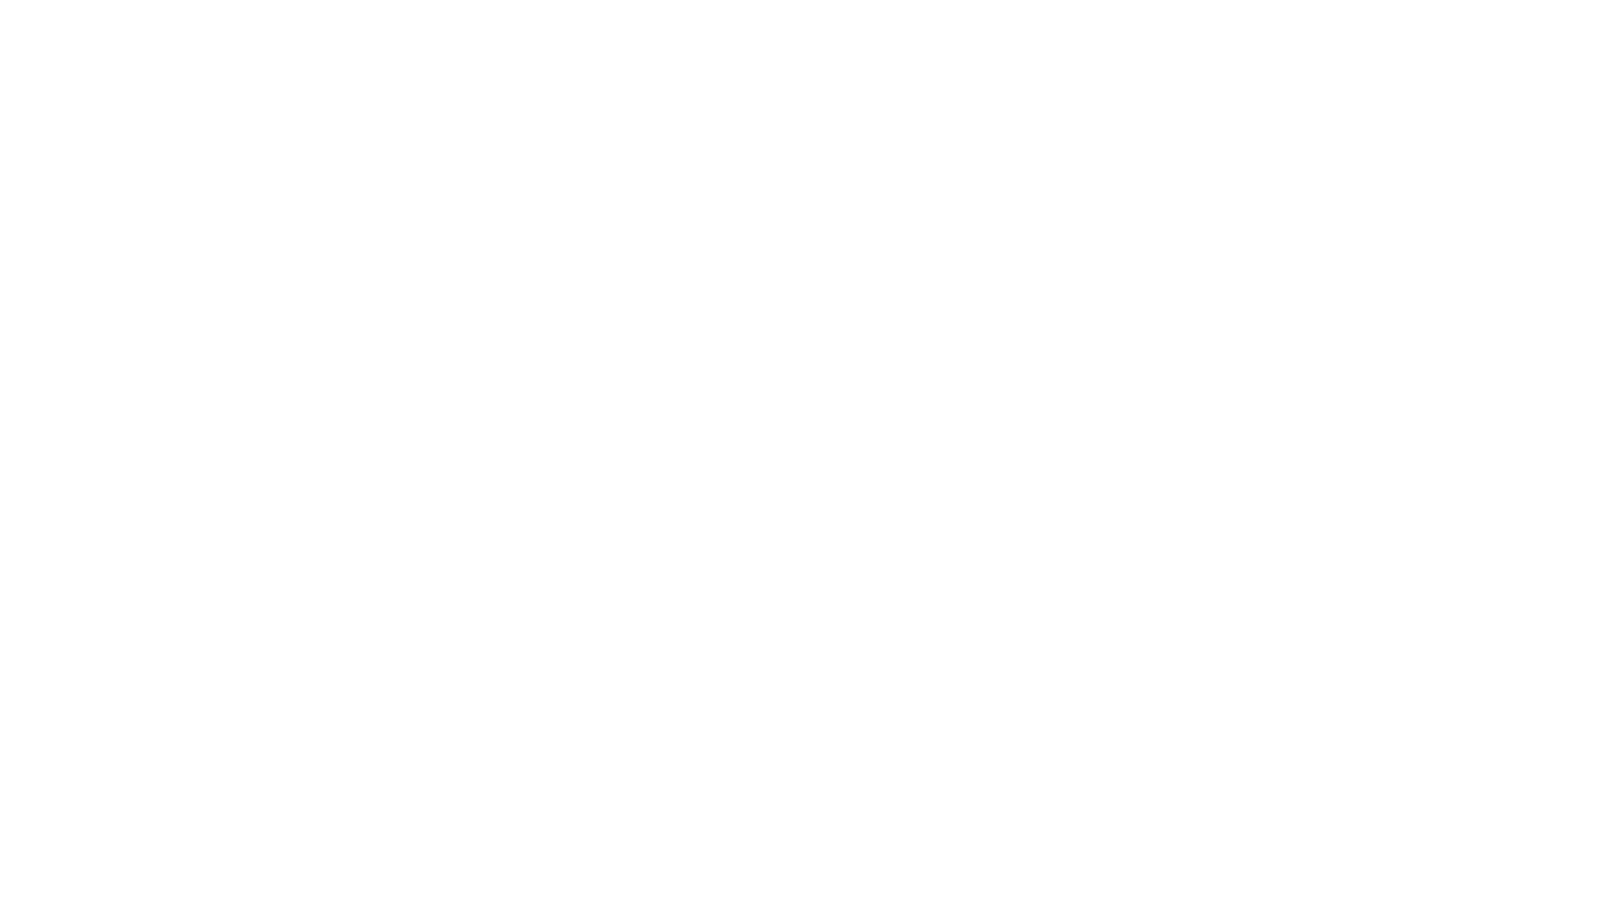 Beluister ‘Een Aperolletje’ via o.a. Spotify: https://deoffsiders.lnk.to/eenaperolletje

De Offsiders, het onverschrokken drietal bestaande uit niemand minder dan Wilfred Genee, Wesley Sneijder en Andy van der Meijde, slaan toe met een aanstekelijke feelgood-single die je rechtstreeks naar zonnige terrasjes en zwoele zomeravonden brengt. Hun knaller, ‘Een Aperolletje’ (geschreven en geproduceerd door Ferdi Bolland) is een vrolijk eerbetoon aan de heerlijke zomerse vibes waar we allemaal zo naar snakken. 

Video door Apex Audio Visuals.

#WilfredGenee #WesleySneijder #AndyvanderMeijde #VeronicaOffside